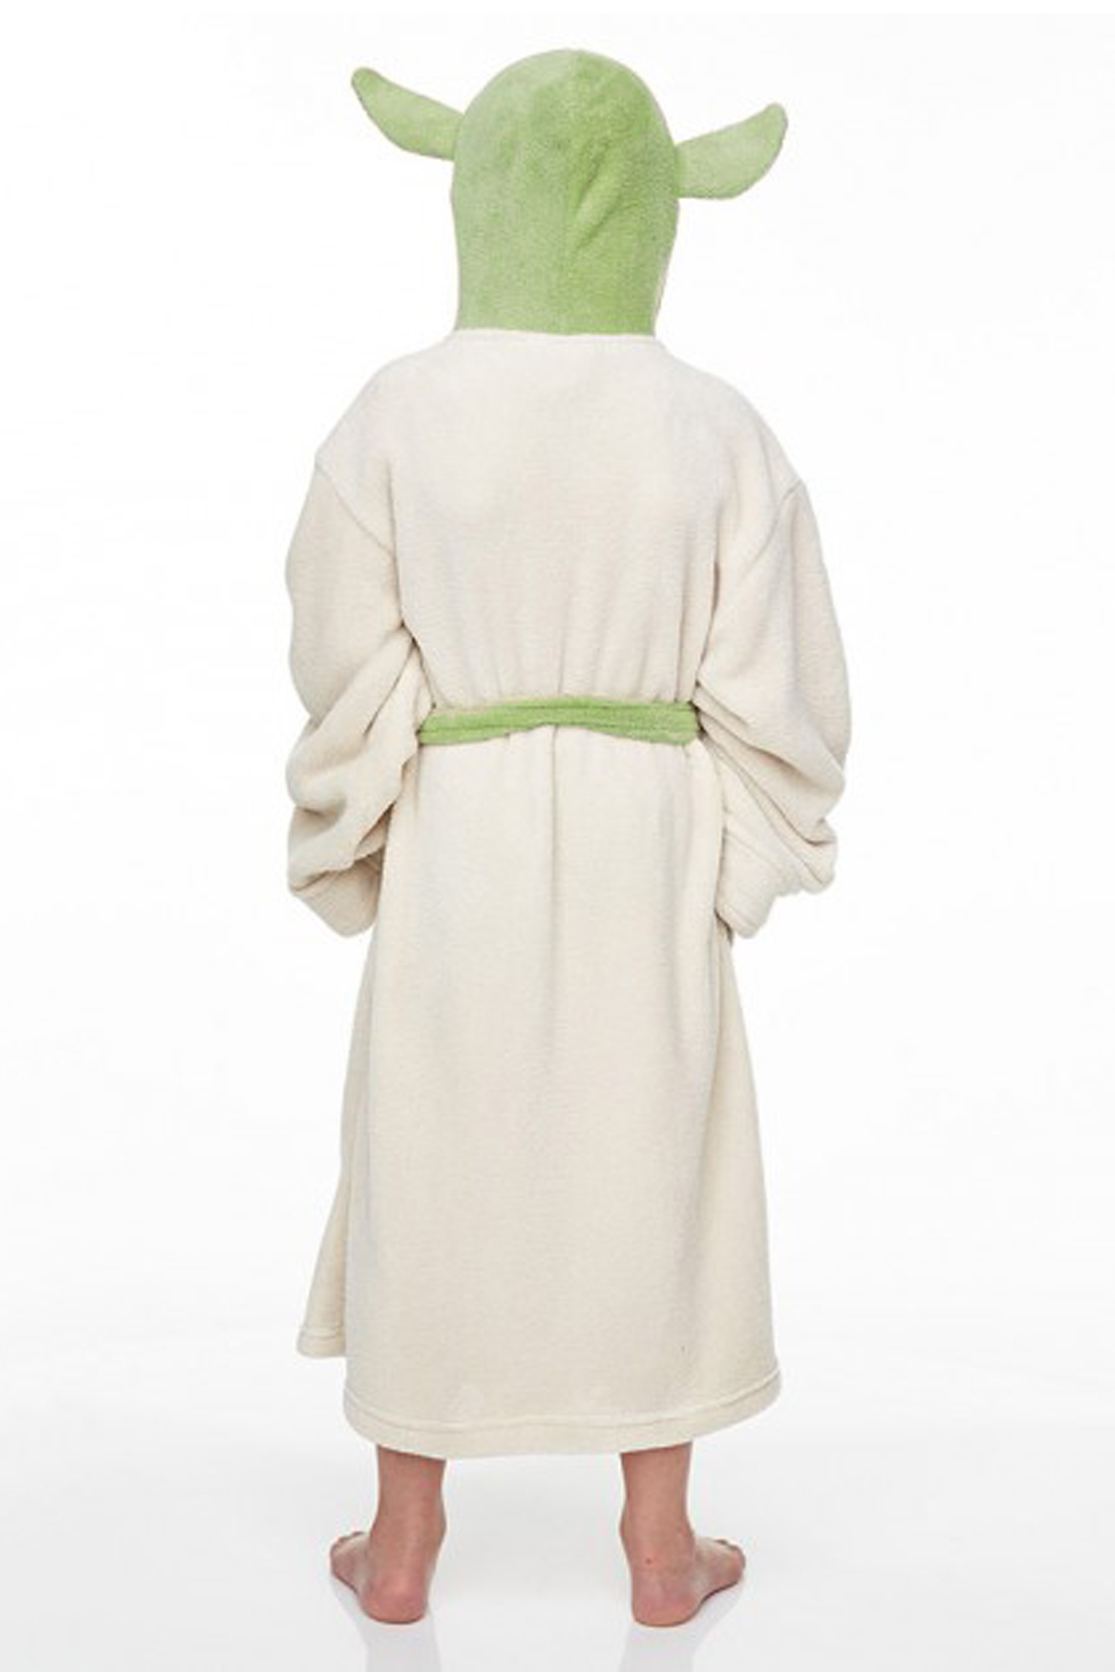 Op de kop van Kraan het dossier Yoda badjas kind Star Wars capuchon kopen? - FeestinjeBeest.nl